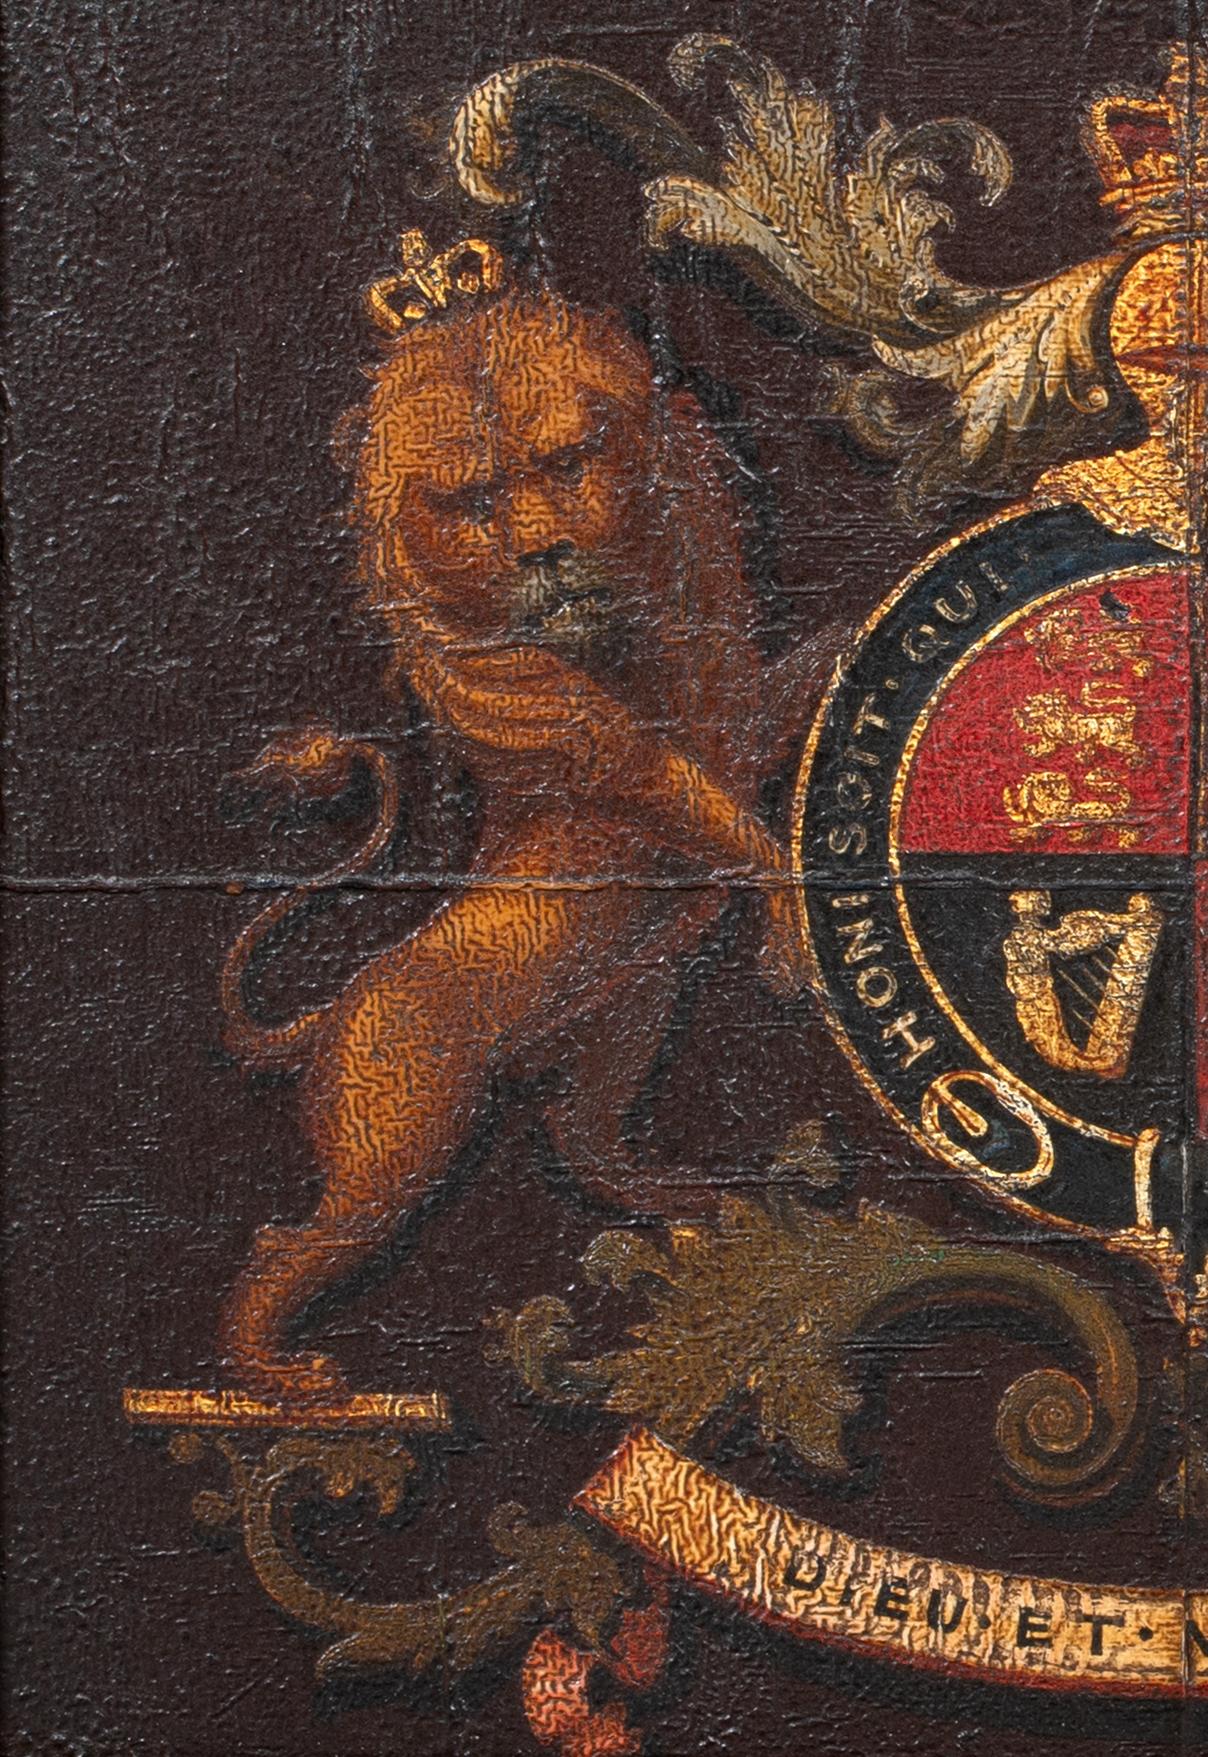 Royal Coat Of Arms, King William III, William Of Orange, 17th Century  7